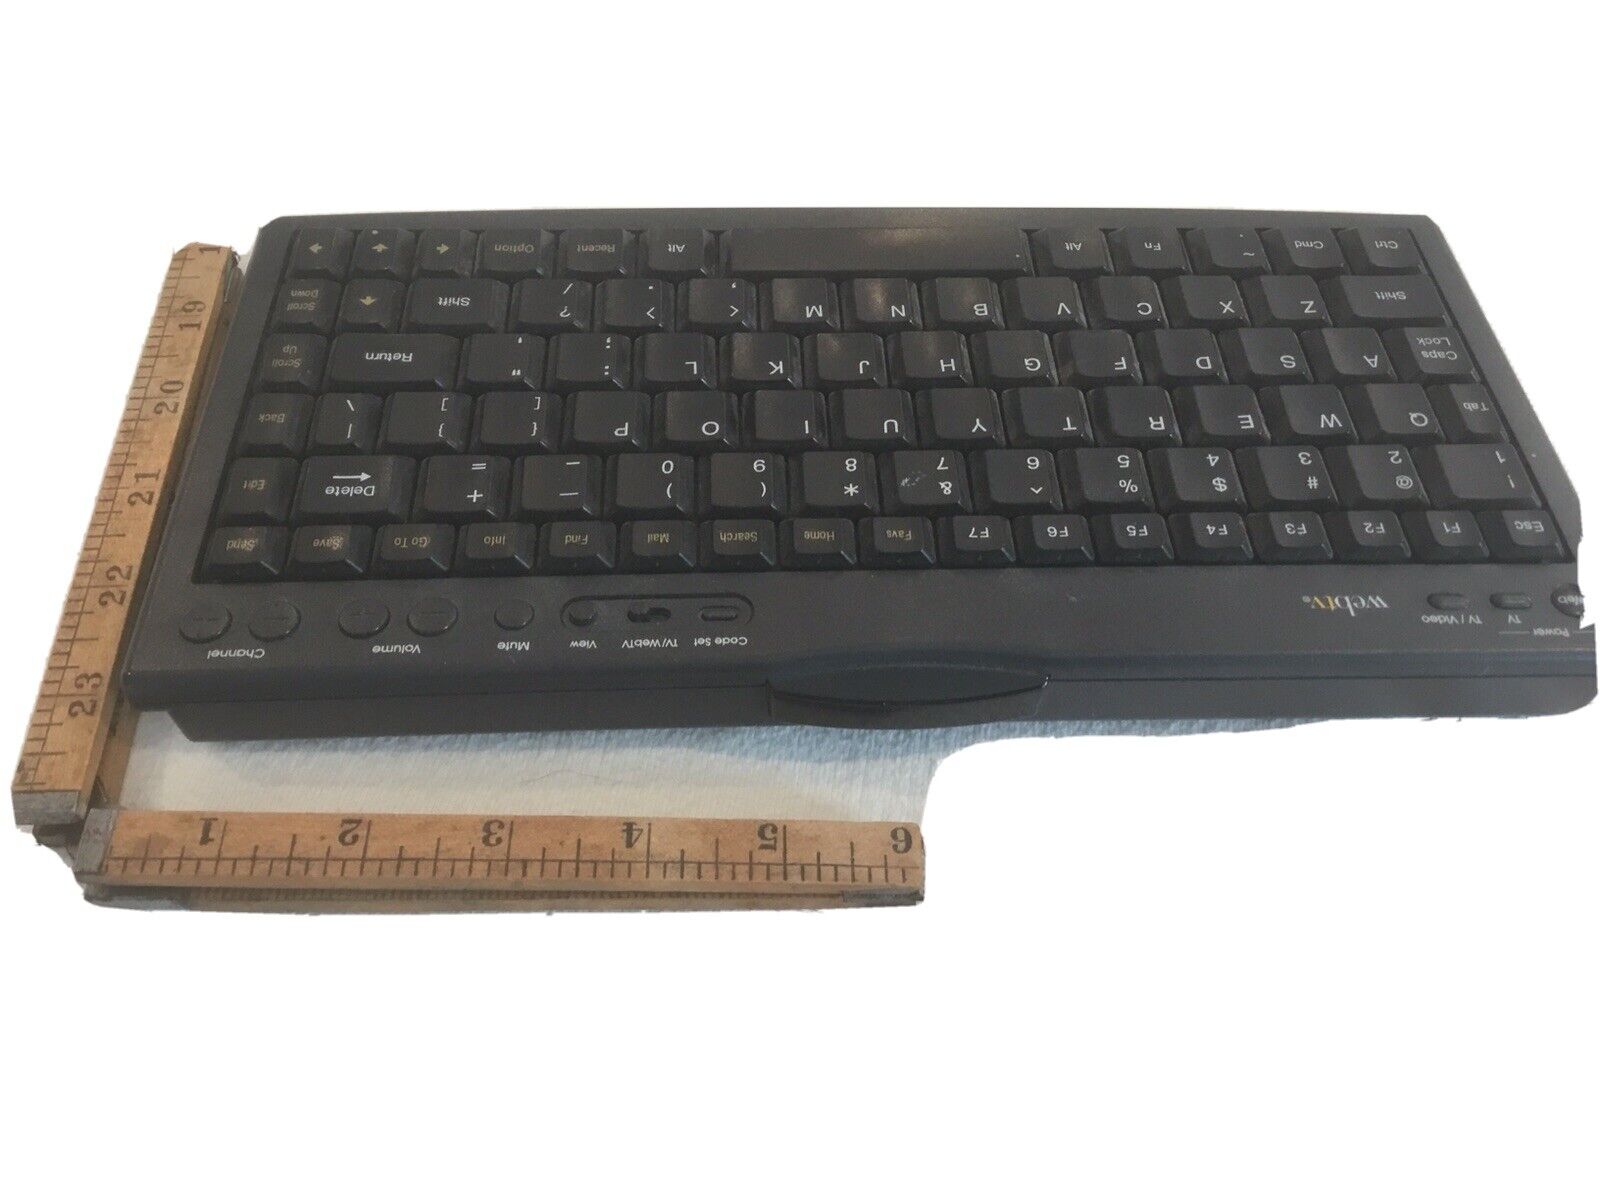 Webtv Wireless Keyboard By Sejin Freeboard Model Swk-8640 Batter Powdered